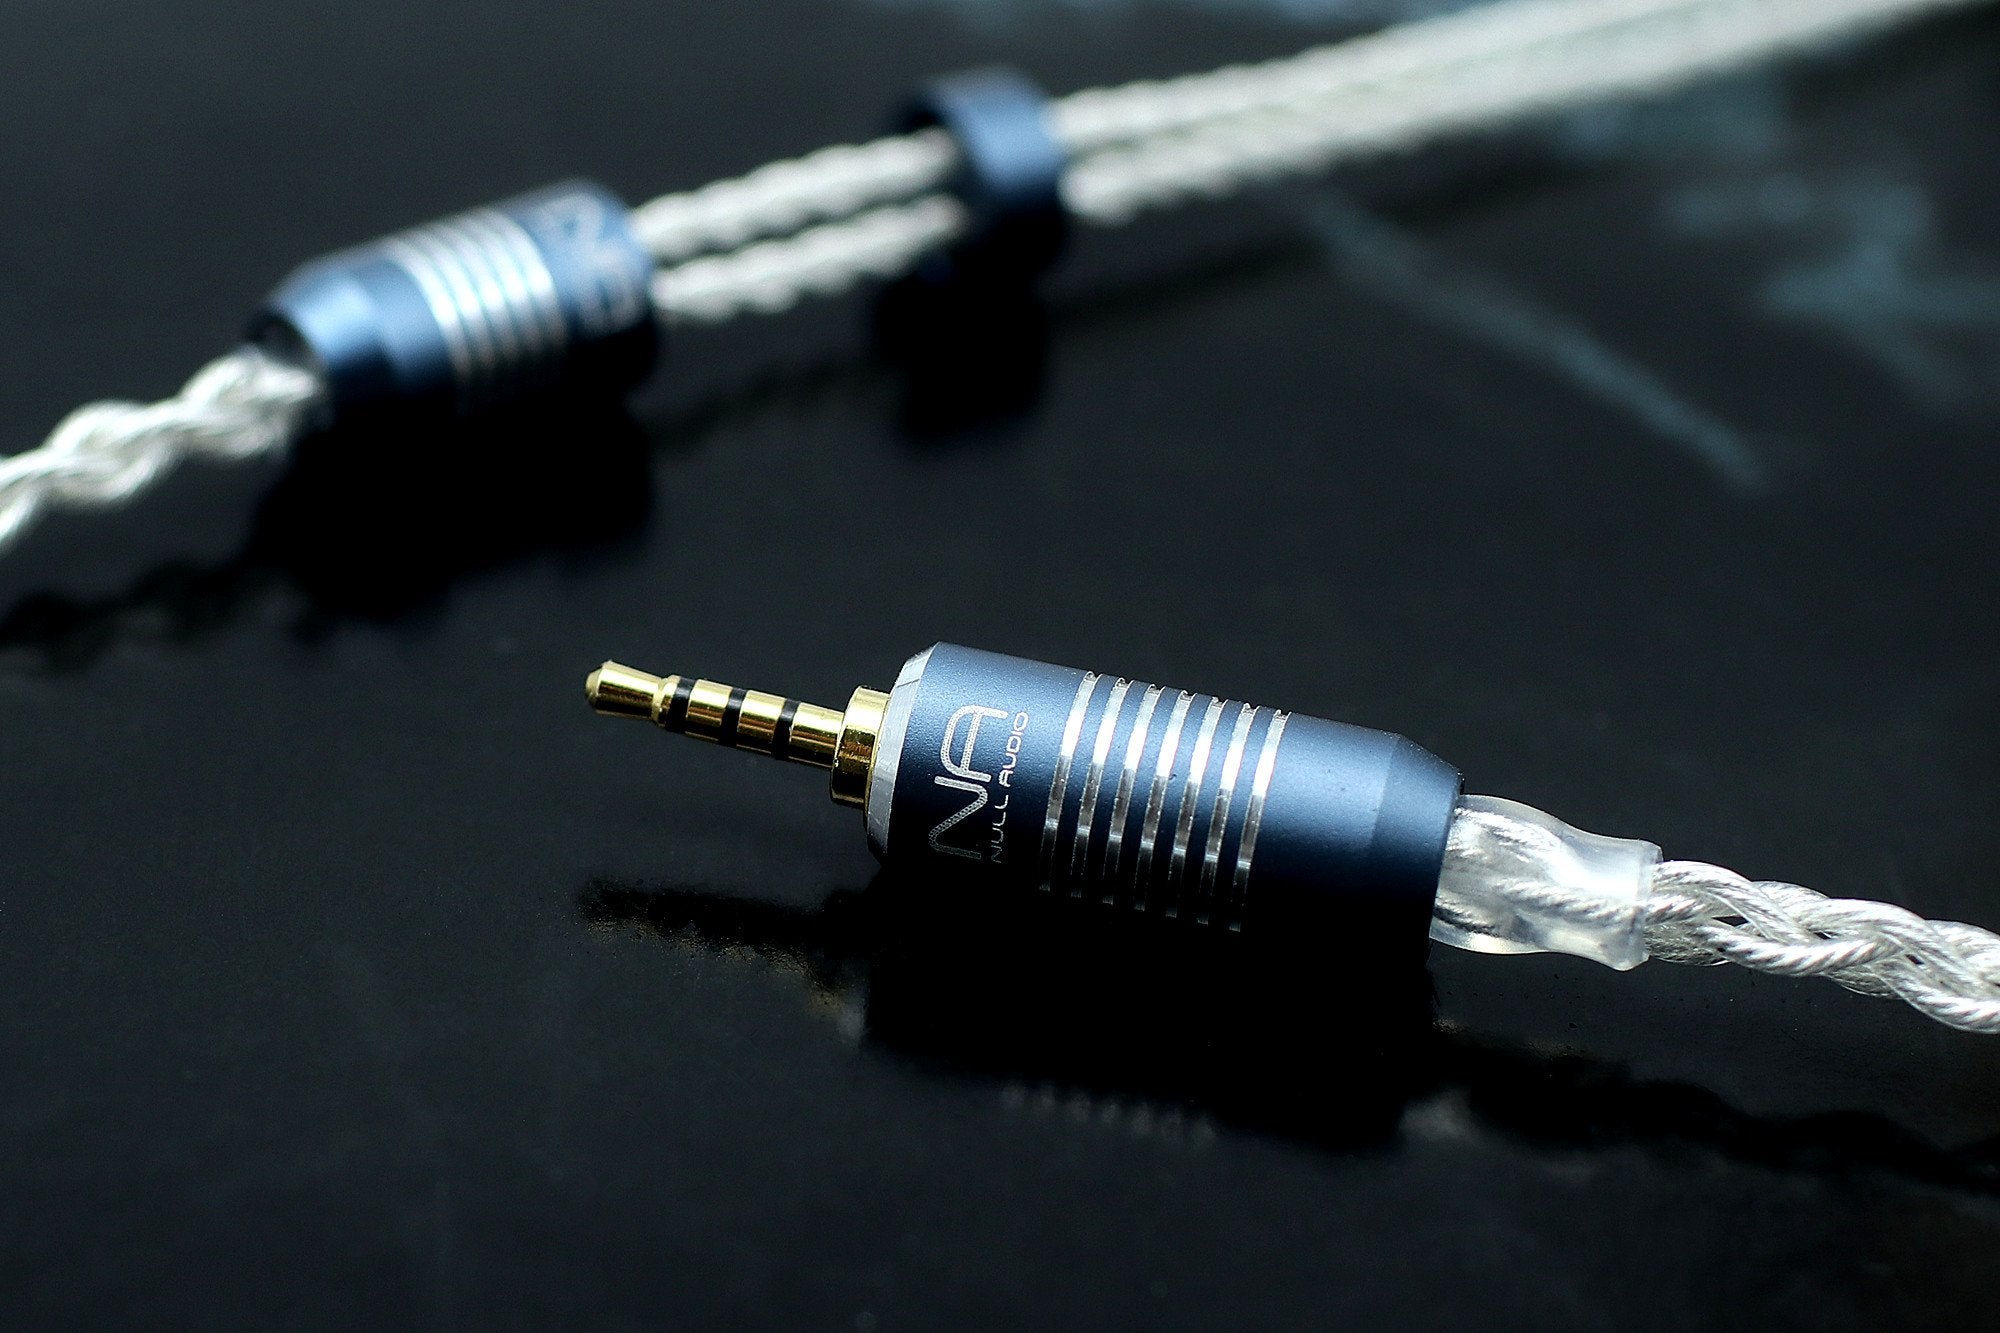 Lune Series MKV Premium Upgrade Cable for Headphone/IEM